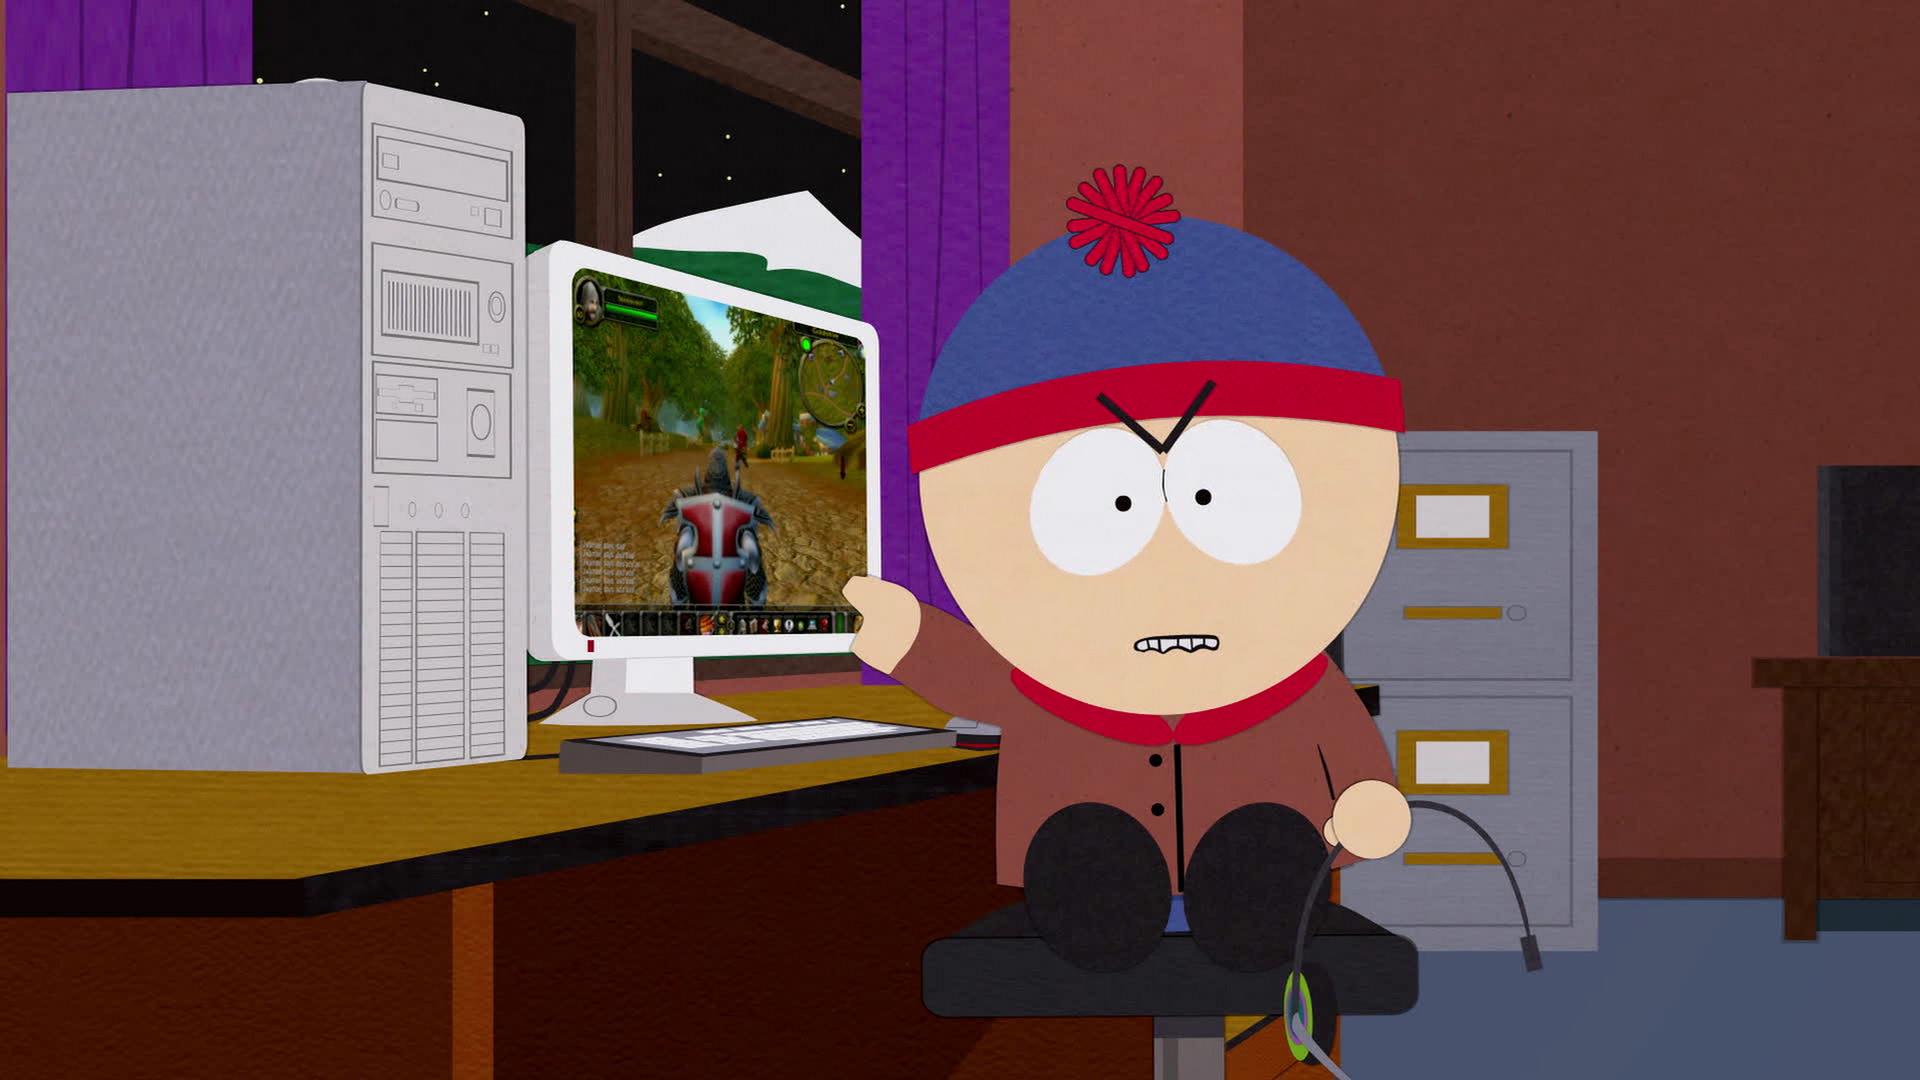 South Park Make Love Not Warcraft Full Episode Torrent